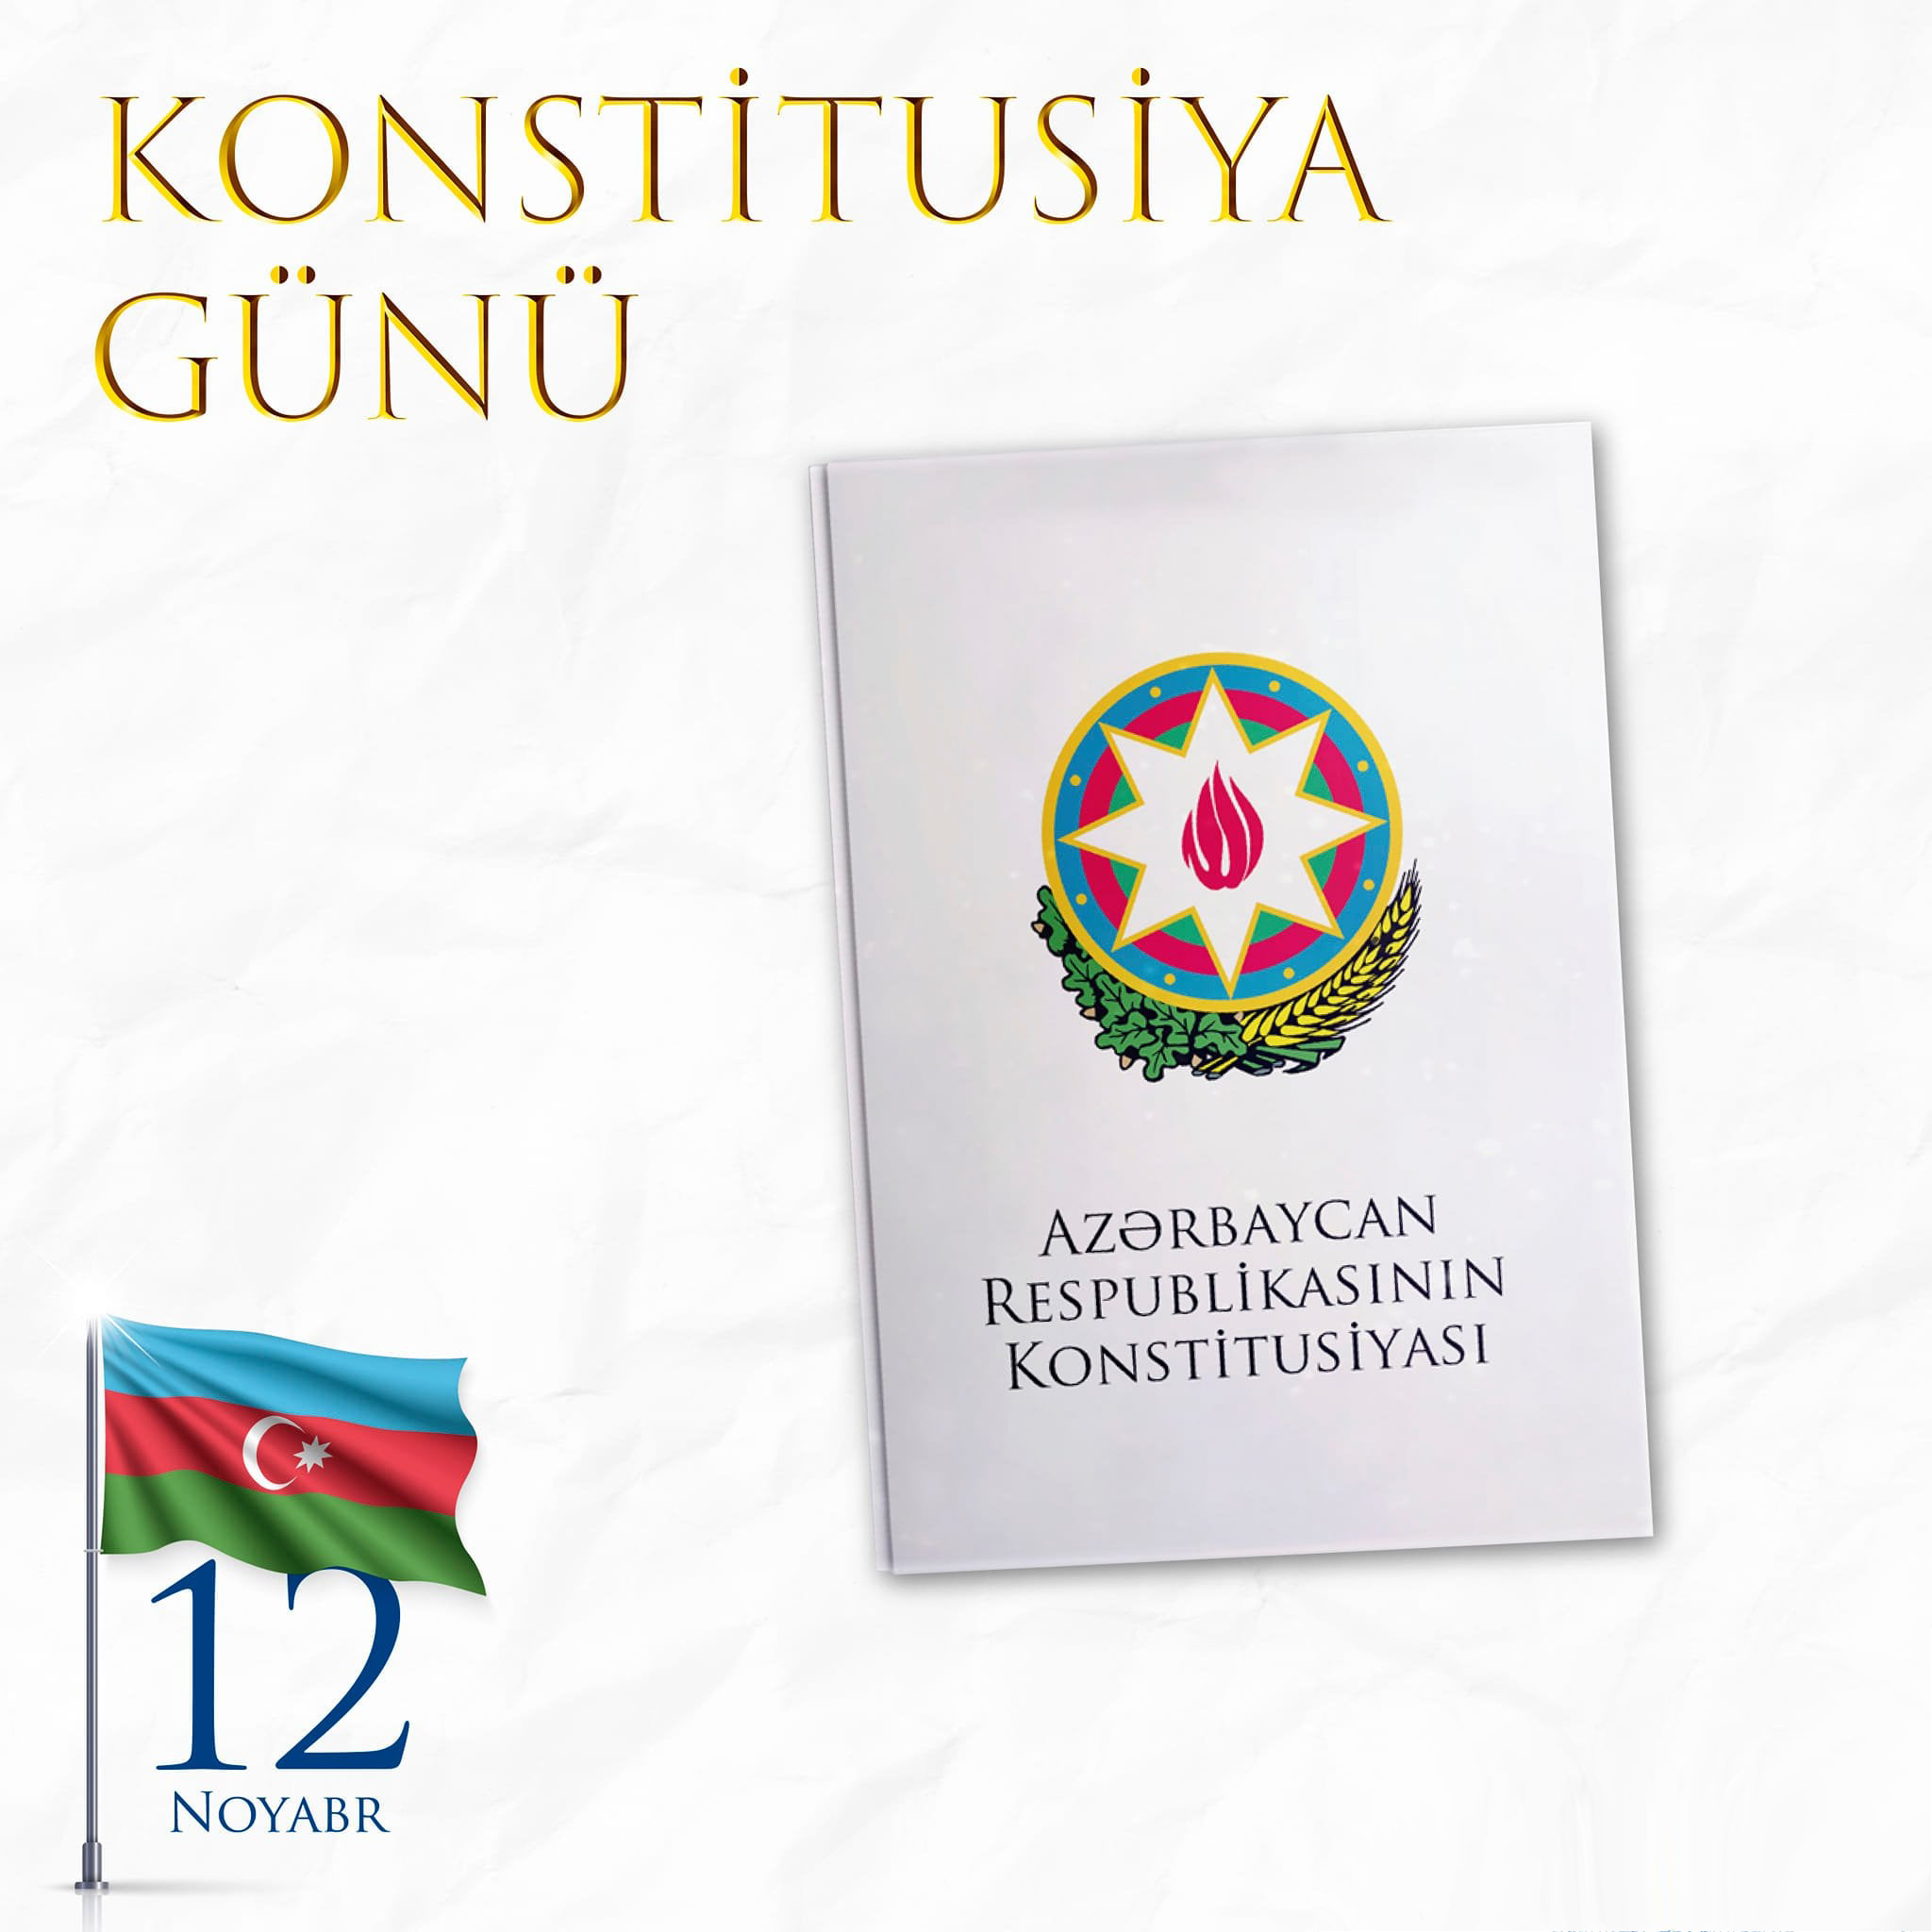 12 noyabr - Azərbaycan Respublikasının Konstitusiya Günüdür  